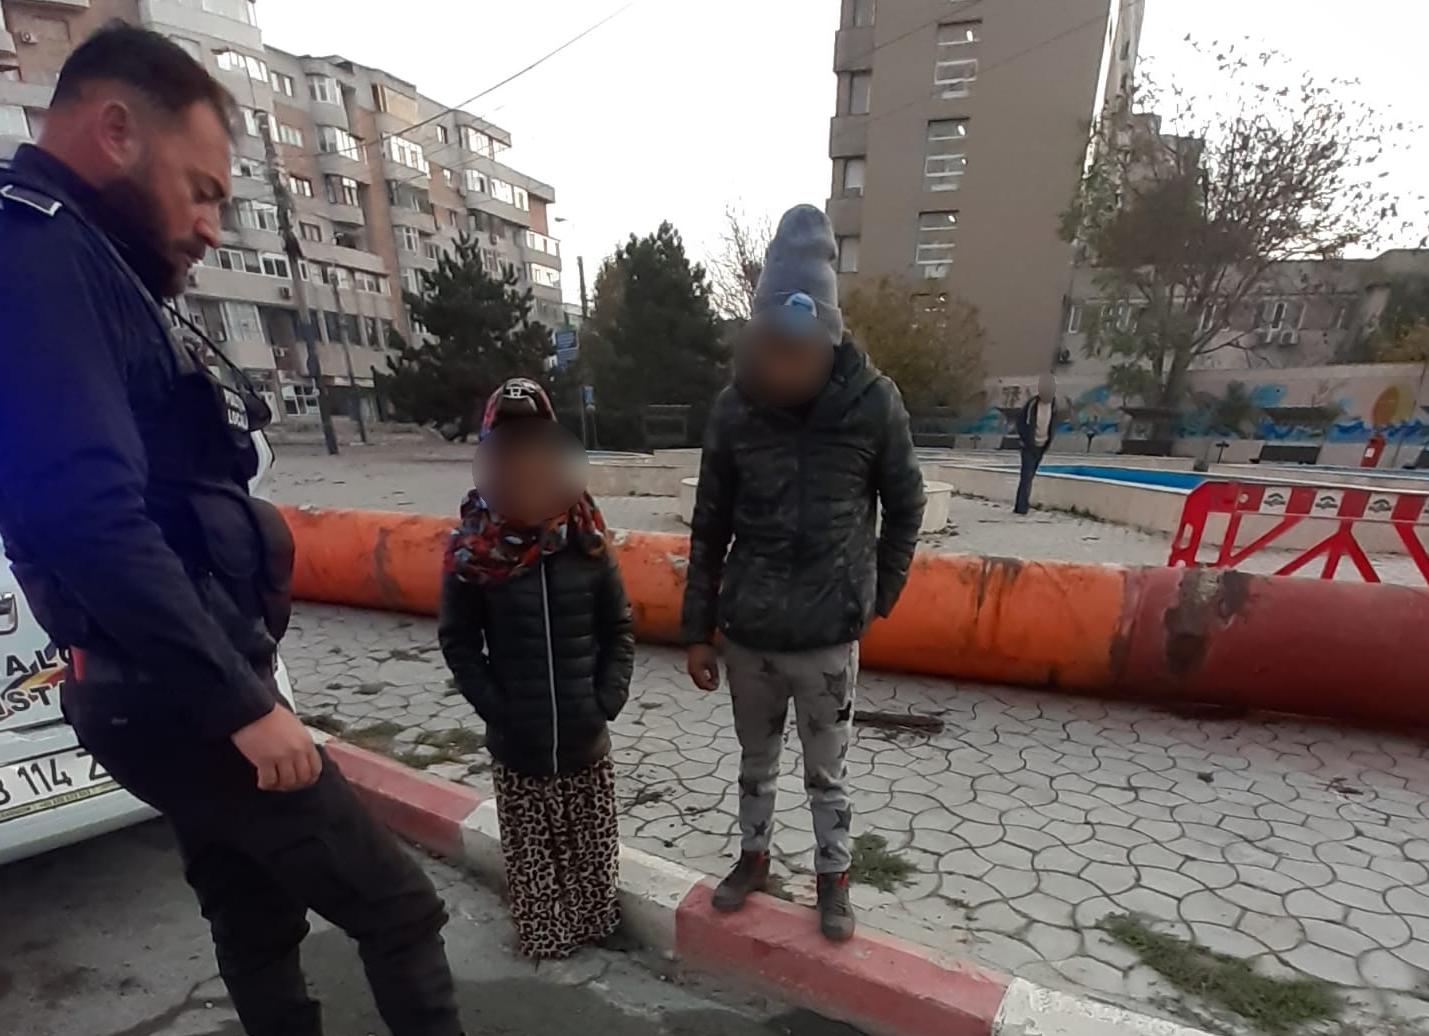 Poliția Locală Constanța a prins două persoane care au sustras țevi metalice folosite la termoficare